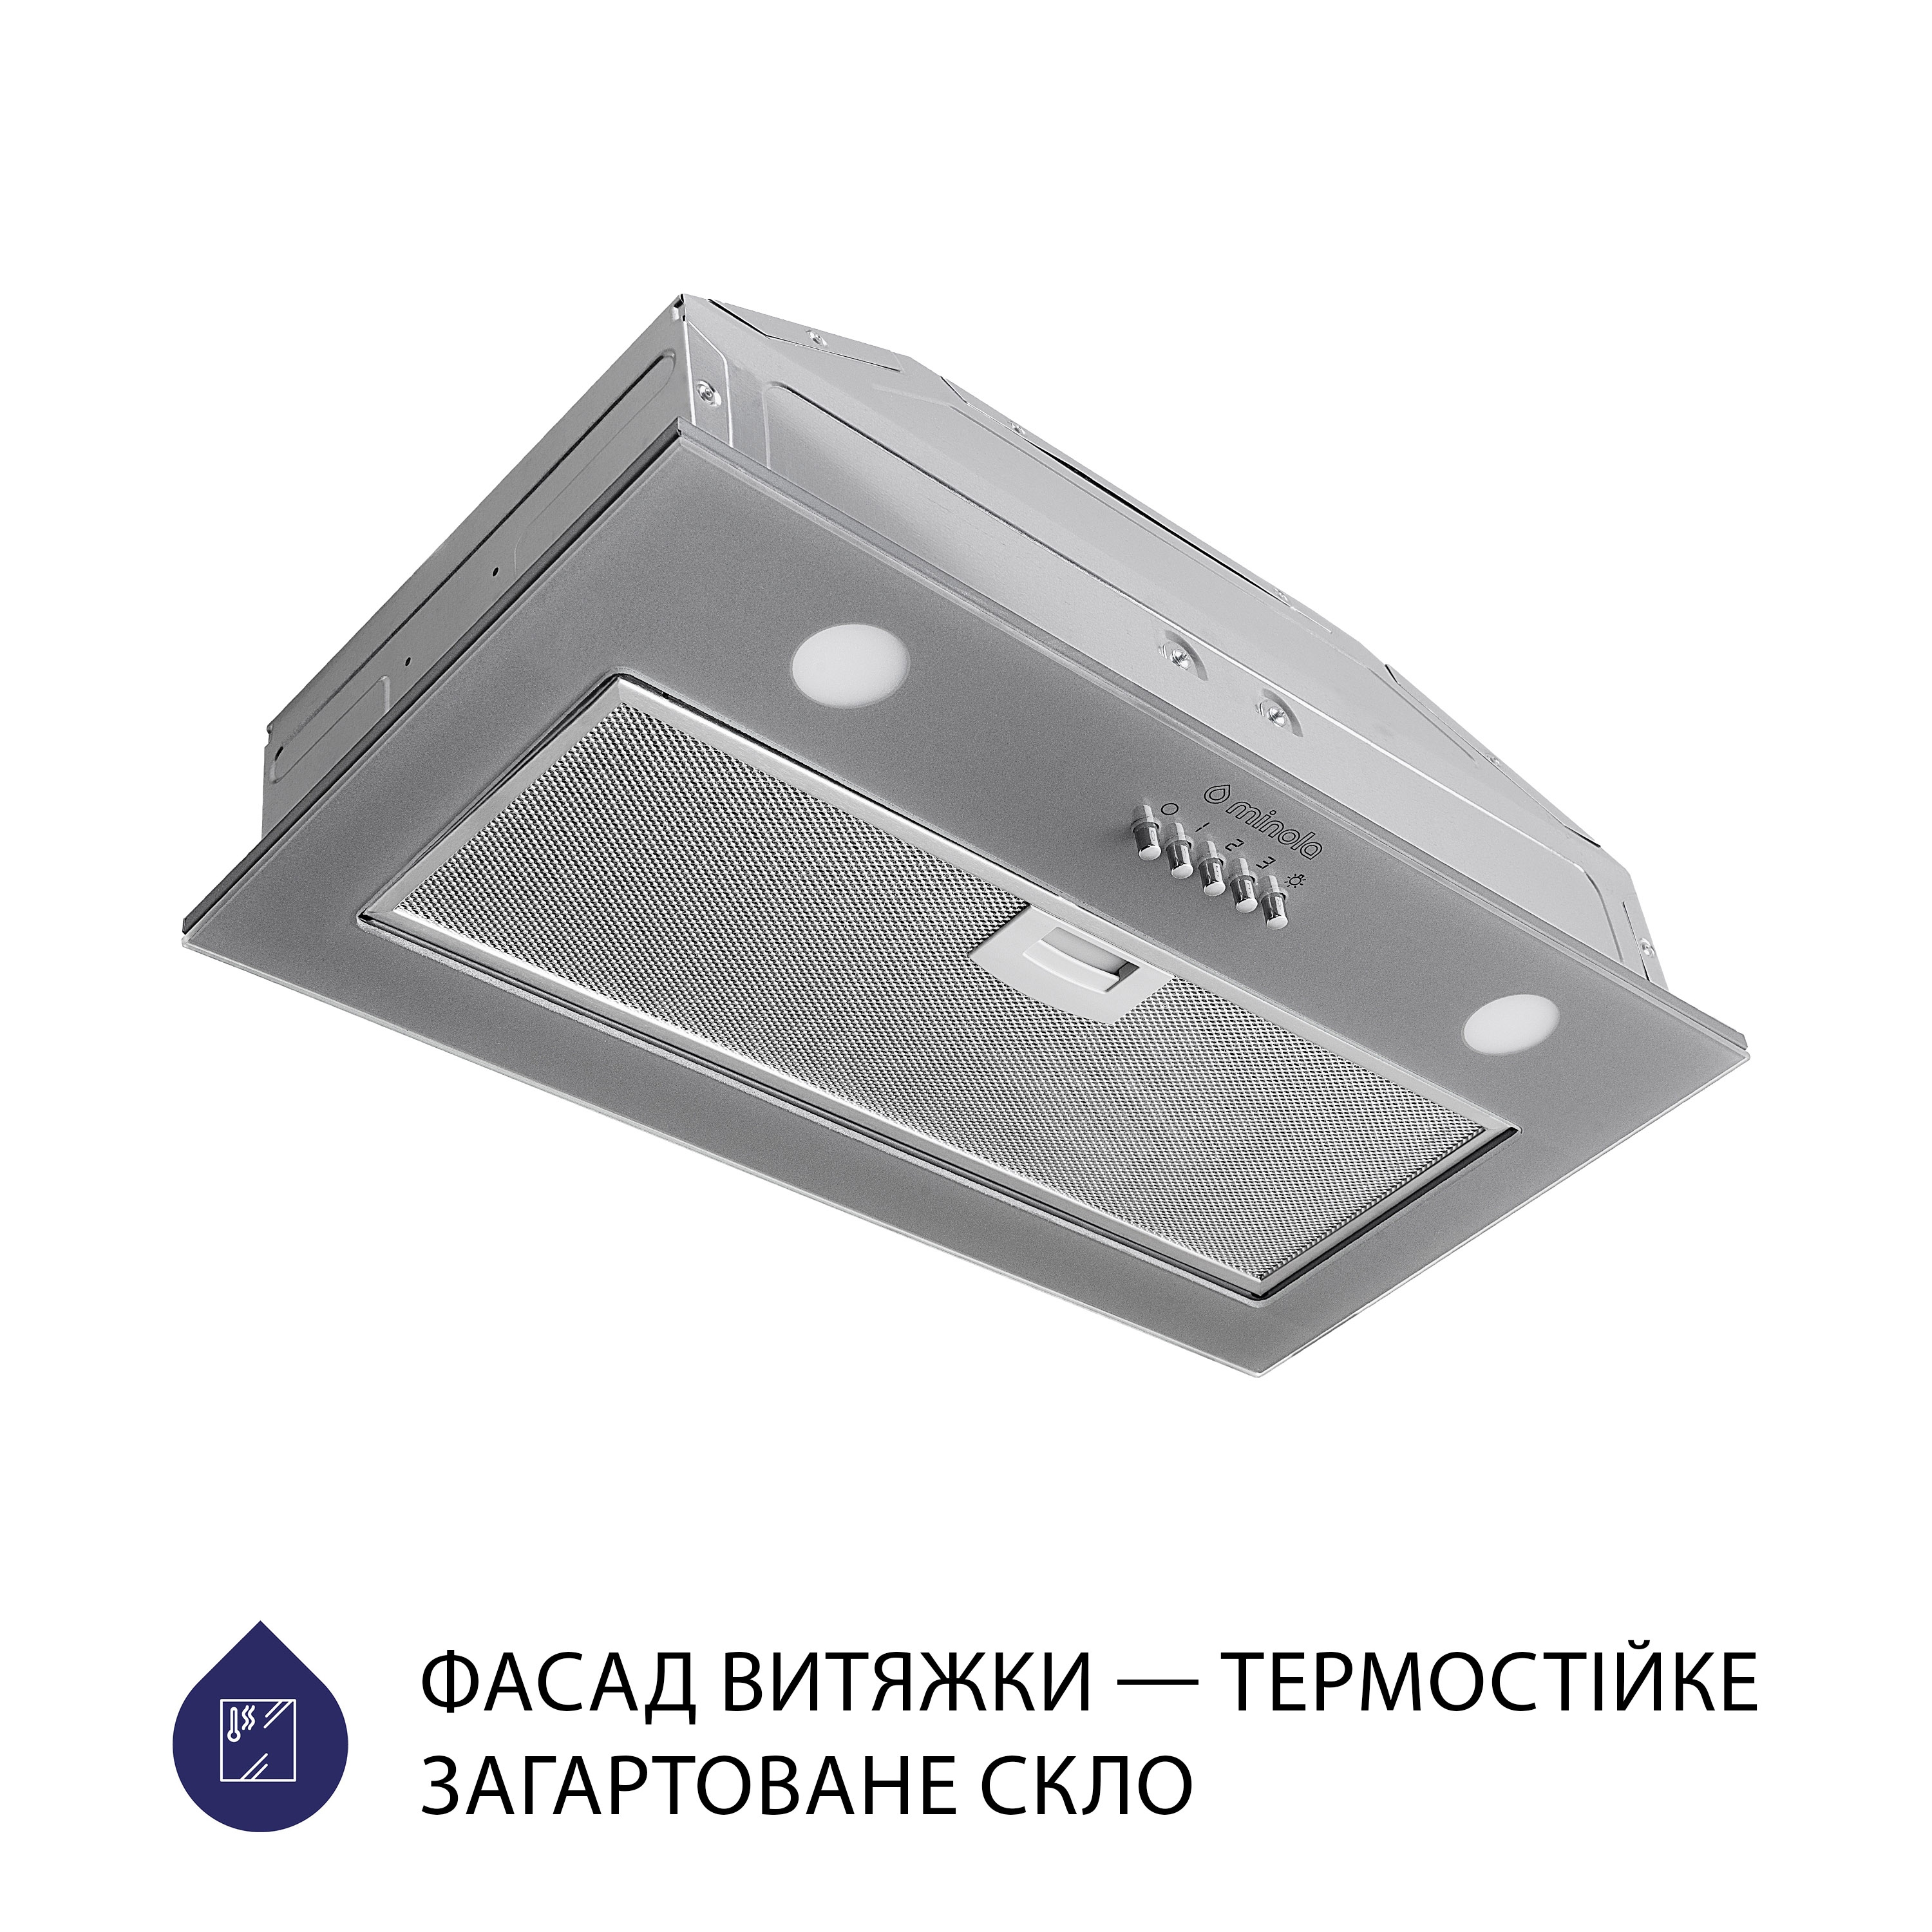 Витяжка кухонная полновстраиваемая Minola HBI 5262 GR GLASS 700 LED цена 4229 грн - фотография 2